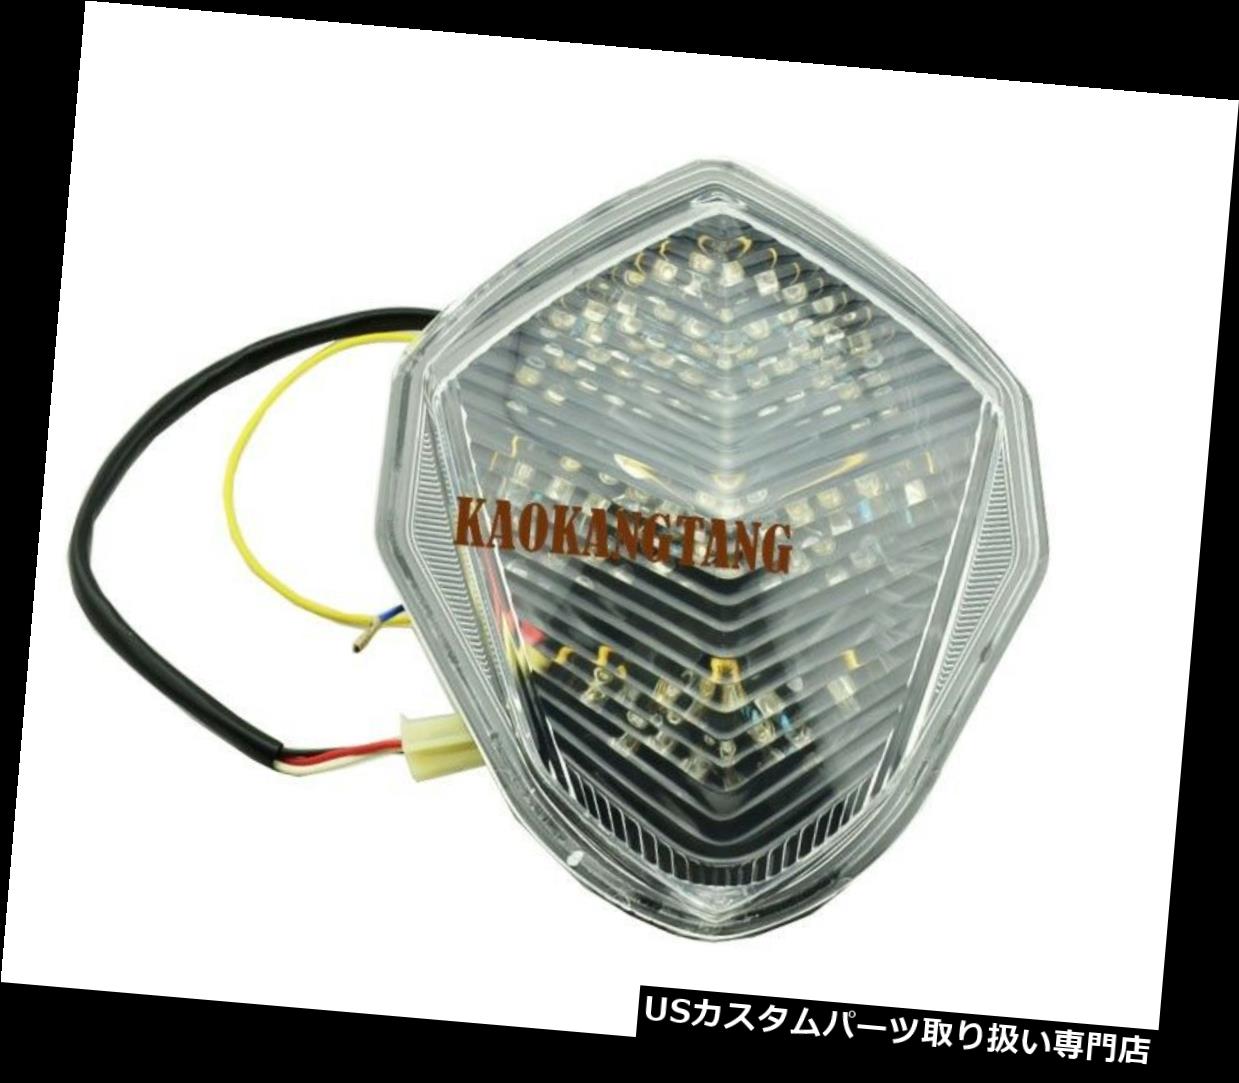 Clear LED Brake Tail Light Turn Signal For Suzuki GSXR 1000 2003-2004 K3カテゴリUSテールライト状態新品メーカーSuzuki車種GSXR1000発送詳細送料一律 1000円（※北海道、沖縄、離島は省く）商品詳細輸入商品の為、英語表記となります。 Condition: New Brand: Unbranded Manufacturer Part Number: Does not apply Warranty: Yes MPN: Does not apply Country/Region of Manufacture: China UPC: Does Not Apply※以下の注意事項をご理解頂いた上で、ご入札下さい※■海外輸入品の為、NC,NRでお願い致します。■フィッテングや車検対応の有無については、基本的に画像と説明文よりお客様の方にてご判断をお願いしております。■USパーツは国内の純正パーツを取り外した後、接続コネクタが必ずしも一致するとは限らず、加工が必要な場合もございます。■輸入品につき、商品に小傷やスレなどがある場合がございます。■大型商品に関しましては、配送会社の規定により個人宅への配送が困難な場合がございます。その場合は、会社や倉庫、最寄りの営業所での受け取りをお願いする場合がございます。■大型商品に関しましては、輸入消費税が課税される場合もございます。その場合はお客様側で輸入業者へ輸入消費税のお支払いのご負担をお願いする場合がございます。■取付並びにサポートは行なっておりません。また作業時間や難易度は個々の技量に左右されますのでお答え出来かねます。■取扱い説明書などは基本的に同封されておりません。■商品説明文中に英語にて”保障”に関する記載があっても適応はされませんので、ご理解ください。■商品の発送前に事前に念入りな検品を行っておりますが、運送状況による破損等がある場合がございますので、商品到着次第、速やかに商品の確認をお願いします。■到着より7日以内のみ保証対象とします。ただし、取り付け後は、保証対象外となります。■商品の配送方法や日時の指定頂けません。■お届けまでには、2〜3週間程頂いております。ただし、通関処理や天候次第で多少遅れが発生する場合もあります。■商品落札後のお客様のご都合によるキャンセルはお断りしておりますが、落札金額の30％の手数料をいただいた場合のみお受けする場合があります。■他にもUSパーツを多数出品させて頂いておりますので、ご覧頂けたらと思います。■USパーツの輸入代行も行っておりますので、ショップに掲載されていない商品でもお探しする事が可能です!!お気軽にお問い合わせ下さい。&nbsp;